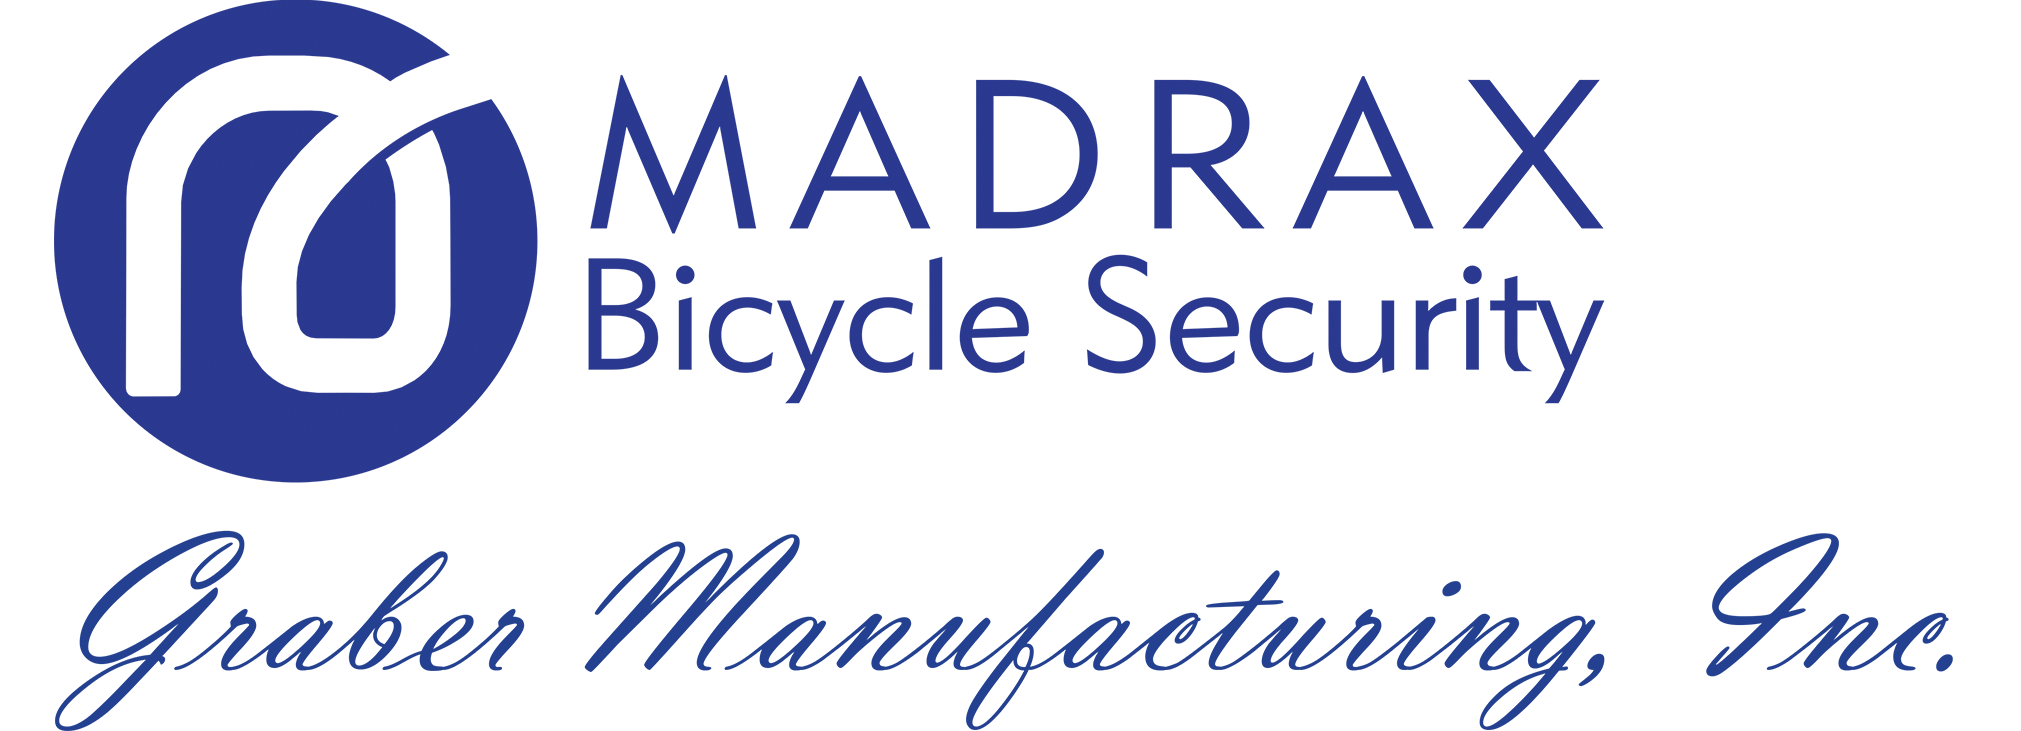 Madrax Logo Graber Blue-1